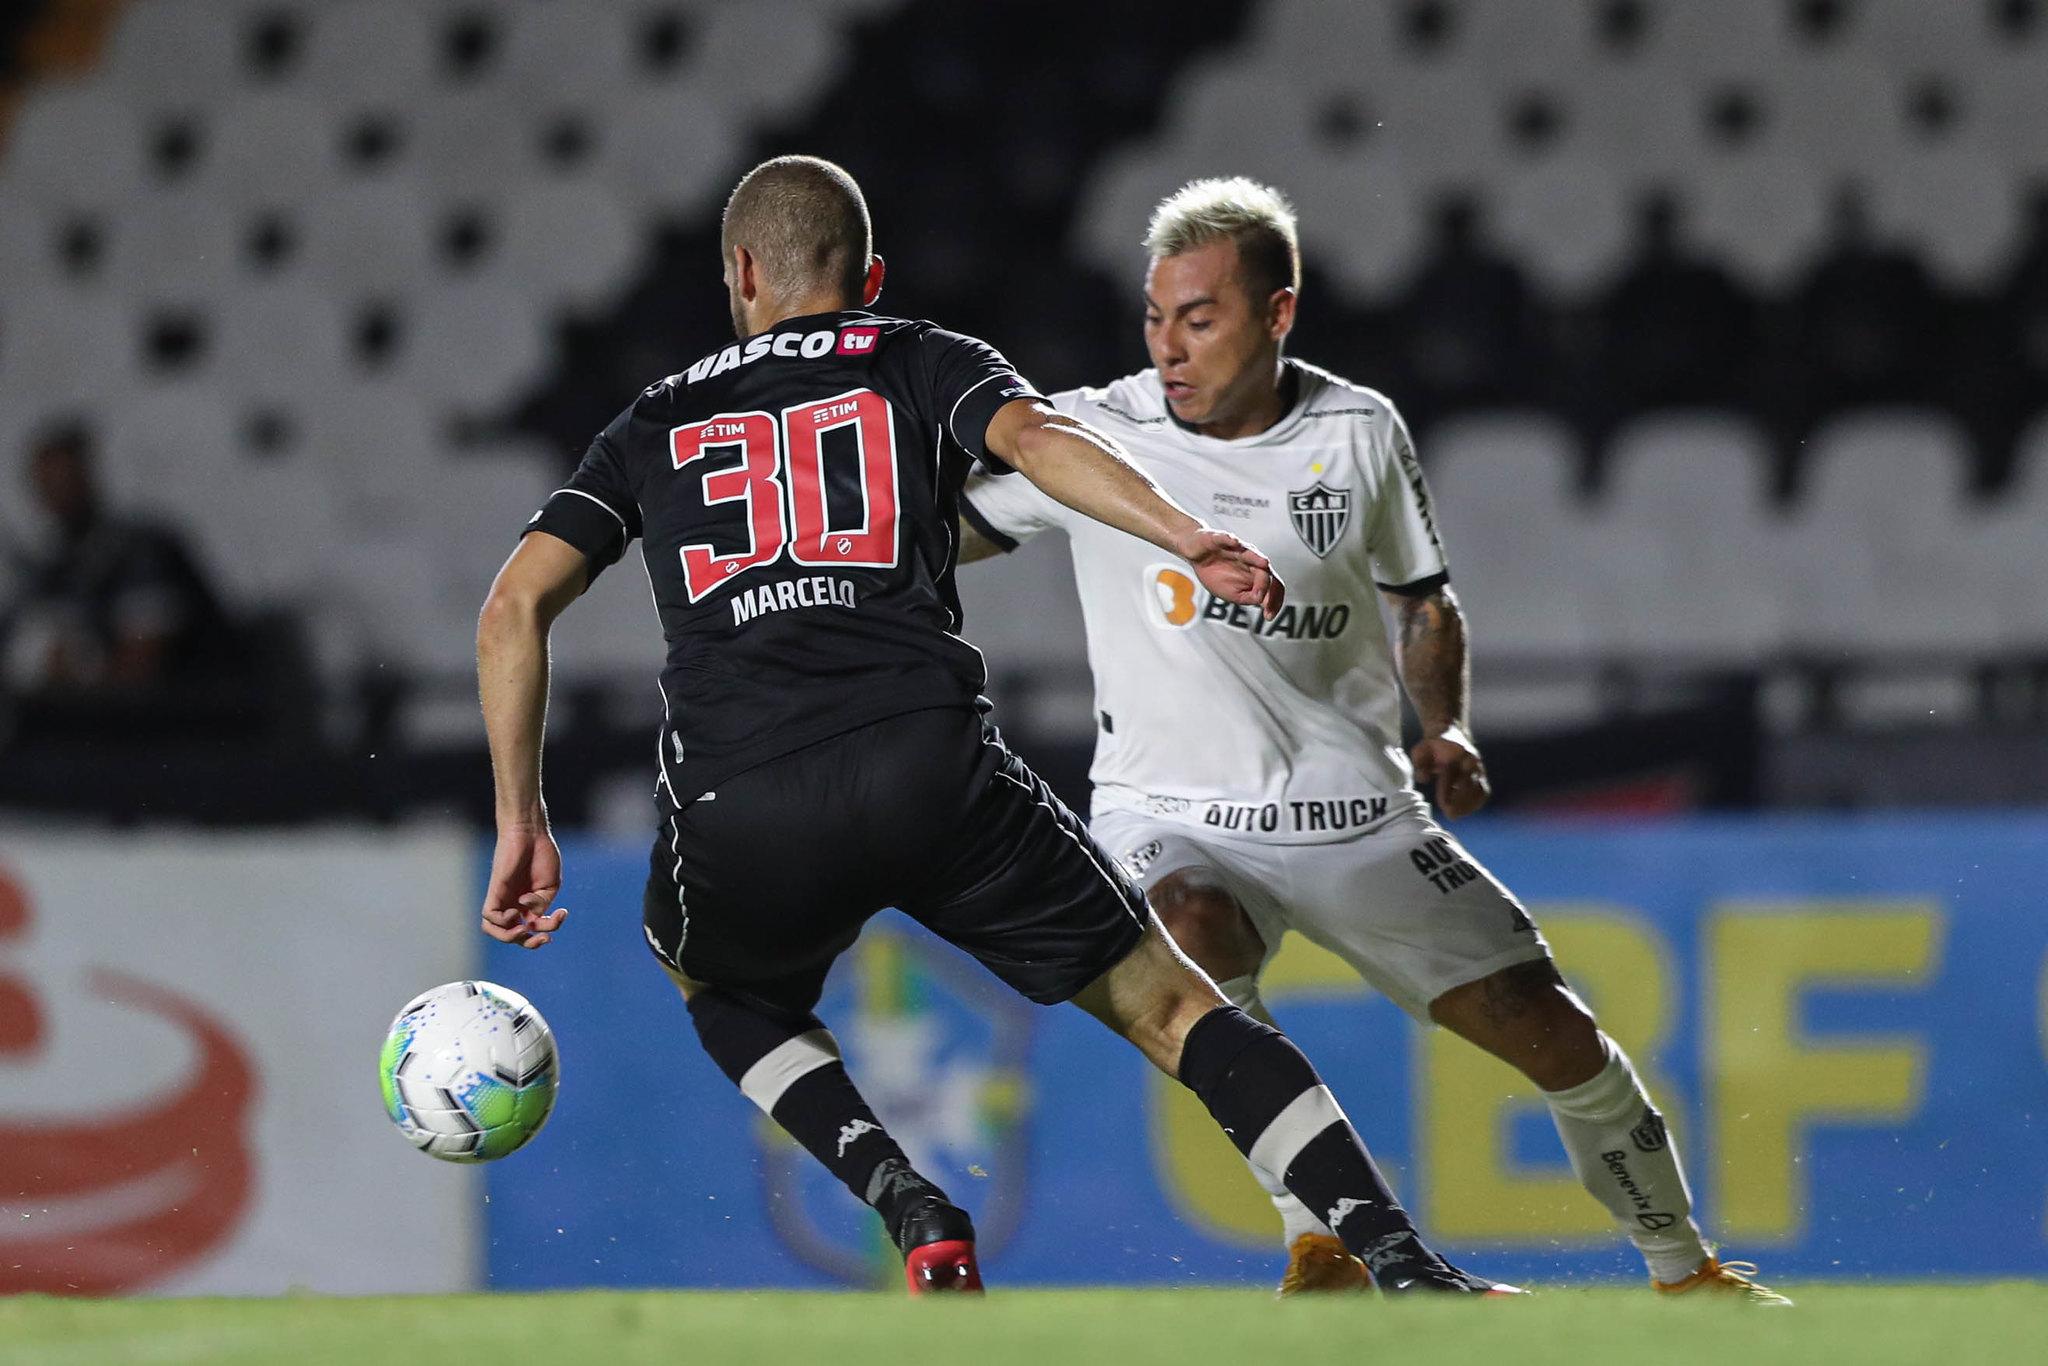 Chileno Vargas conduz a bola em São Januário